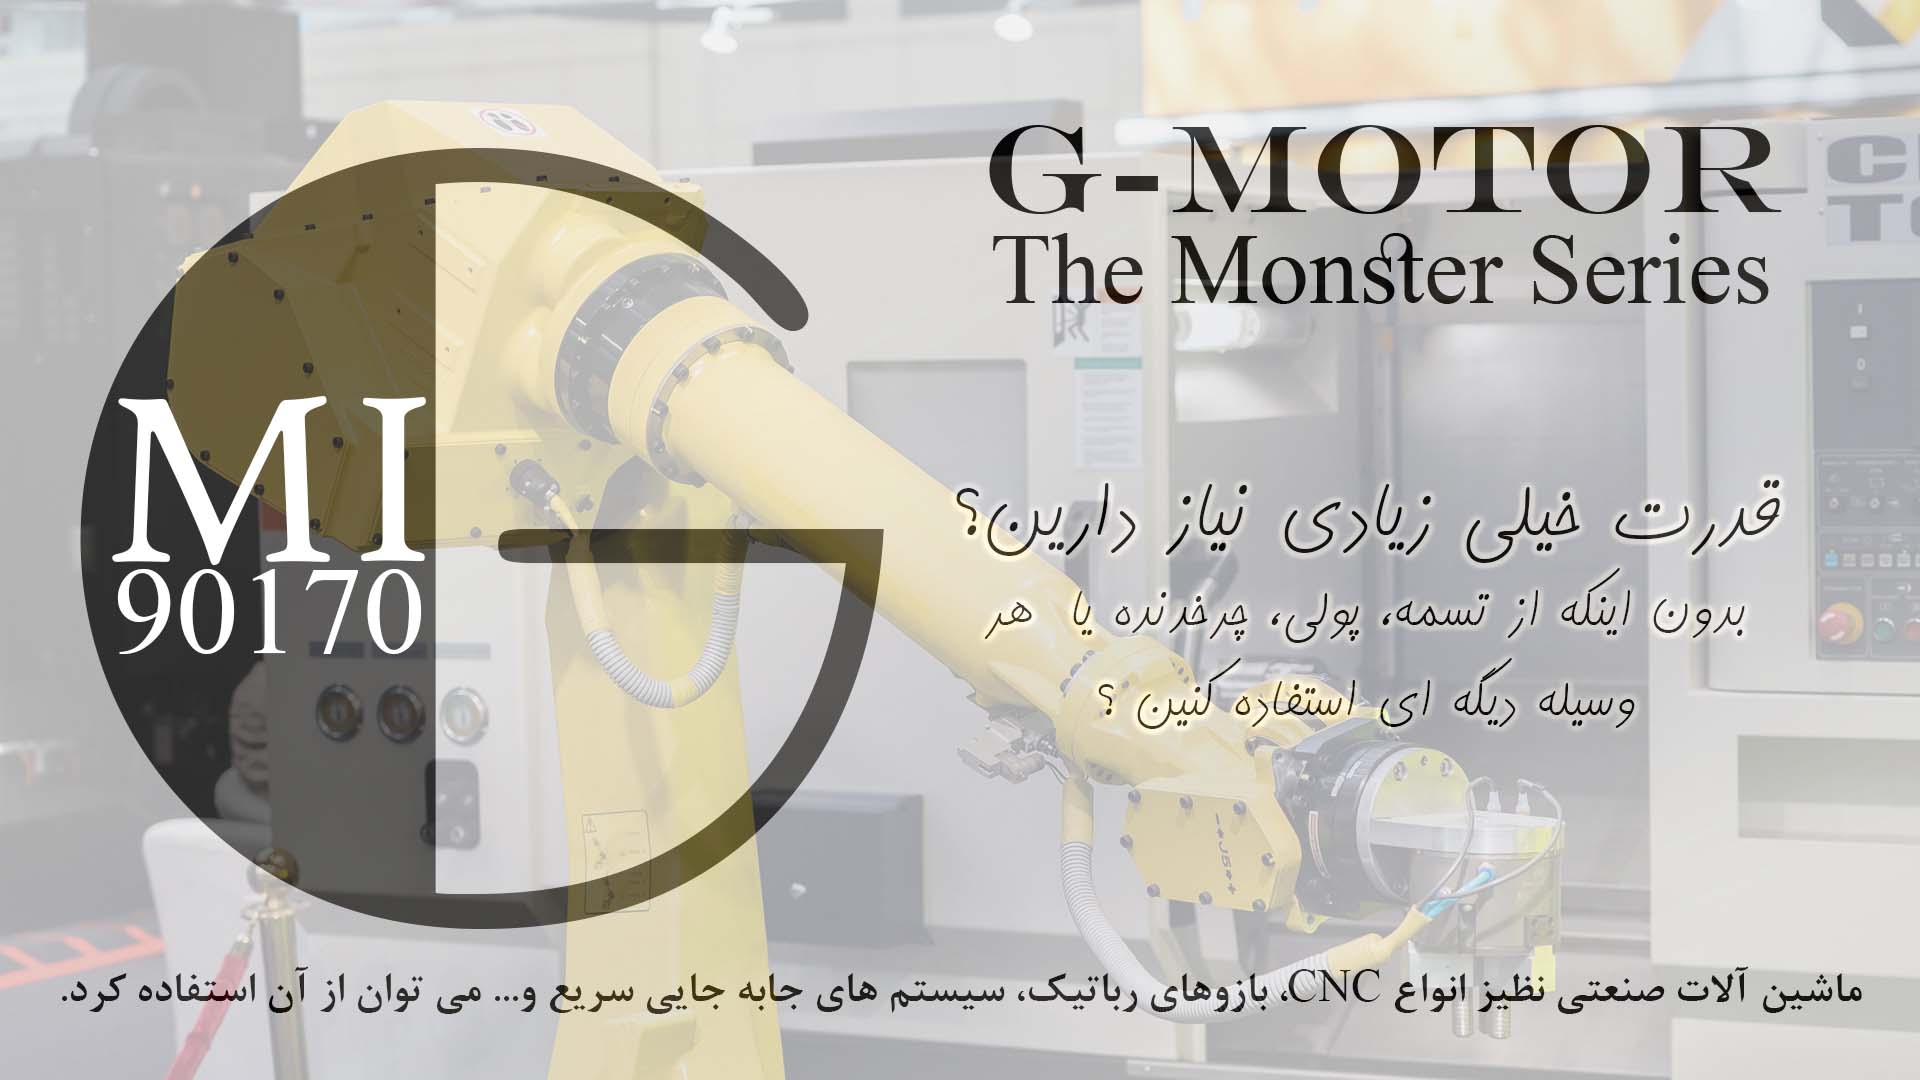 GMI90170 موتور دی سی براشلس (BLDC) اینرانر صنعتی با قابلیت کنترل دور و ... ساخته شده توسط گروه پژوهشی و صنعتی جی موتور (G-MOTOR) در ایران. برای مشاهده تصاویر لطفا یکبار صفحه را بروزرسانی نمایید.